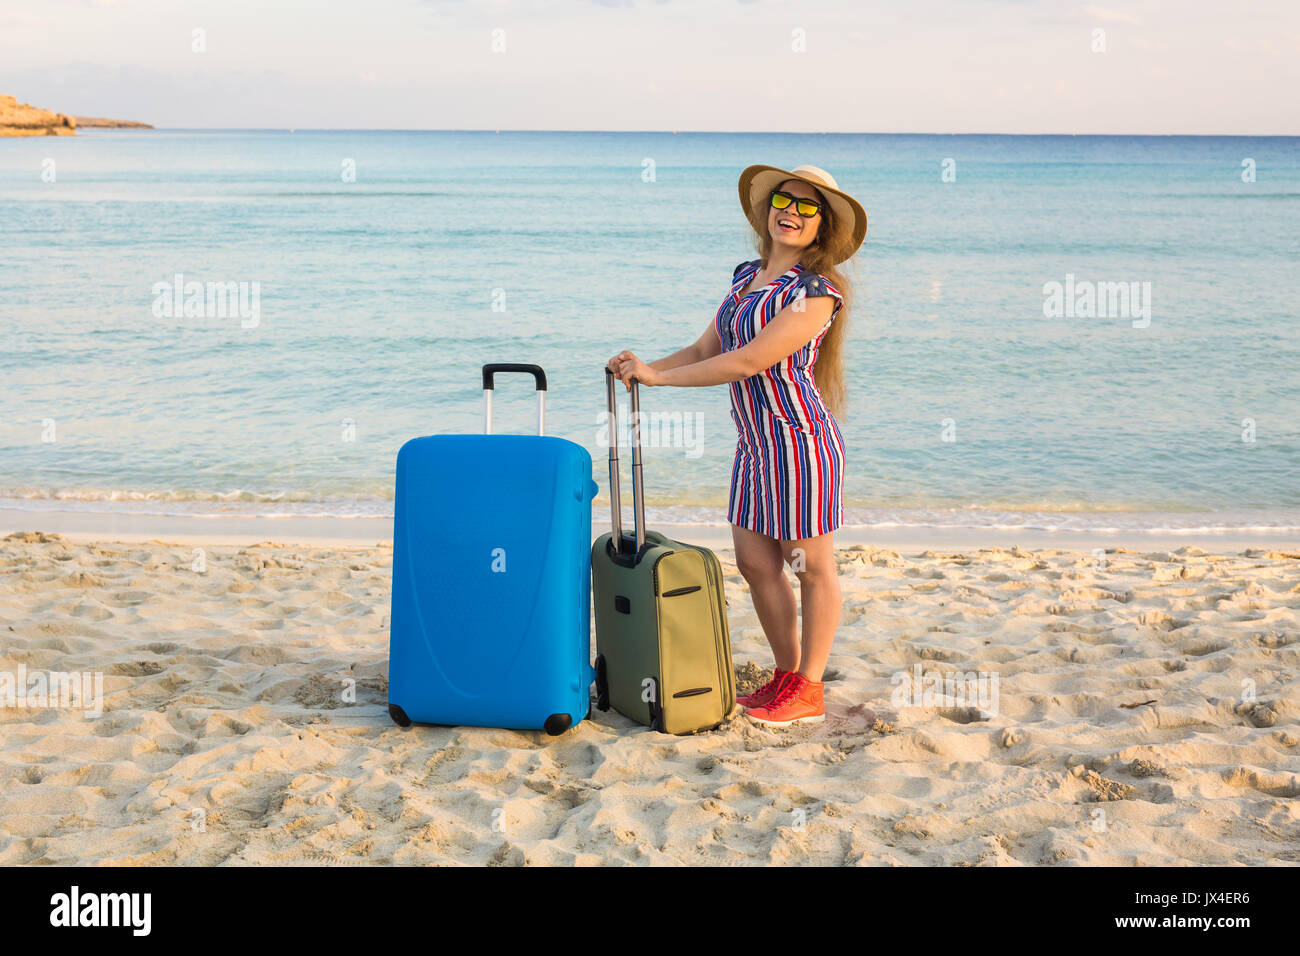 Schöne junge Dame mit einem blauen Koffer am Strand. Menschen, Reisen,  Ferien und Sommer Konzept Stockfotografie - Alamy